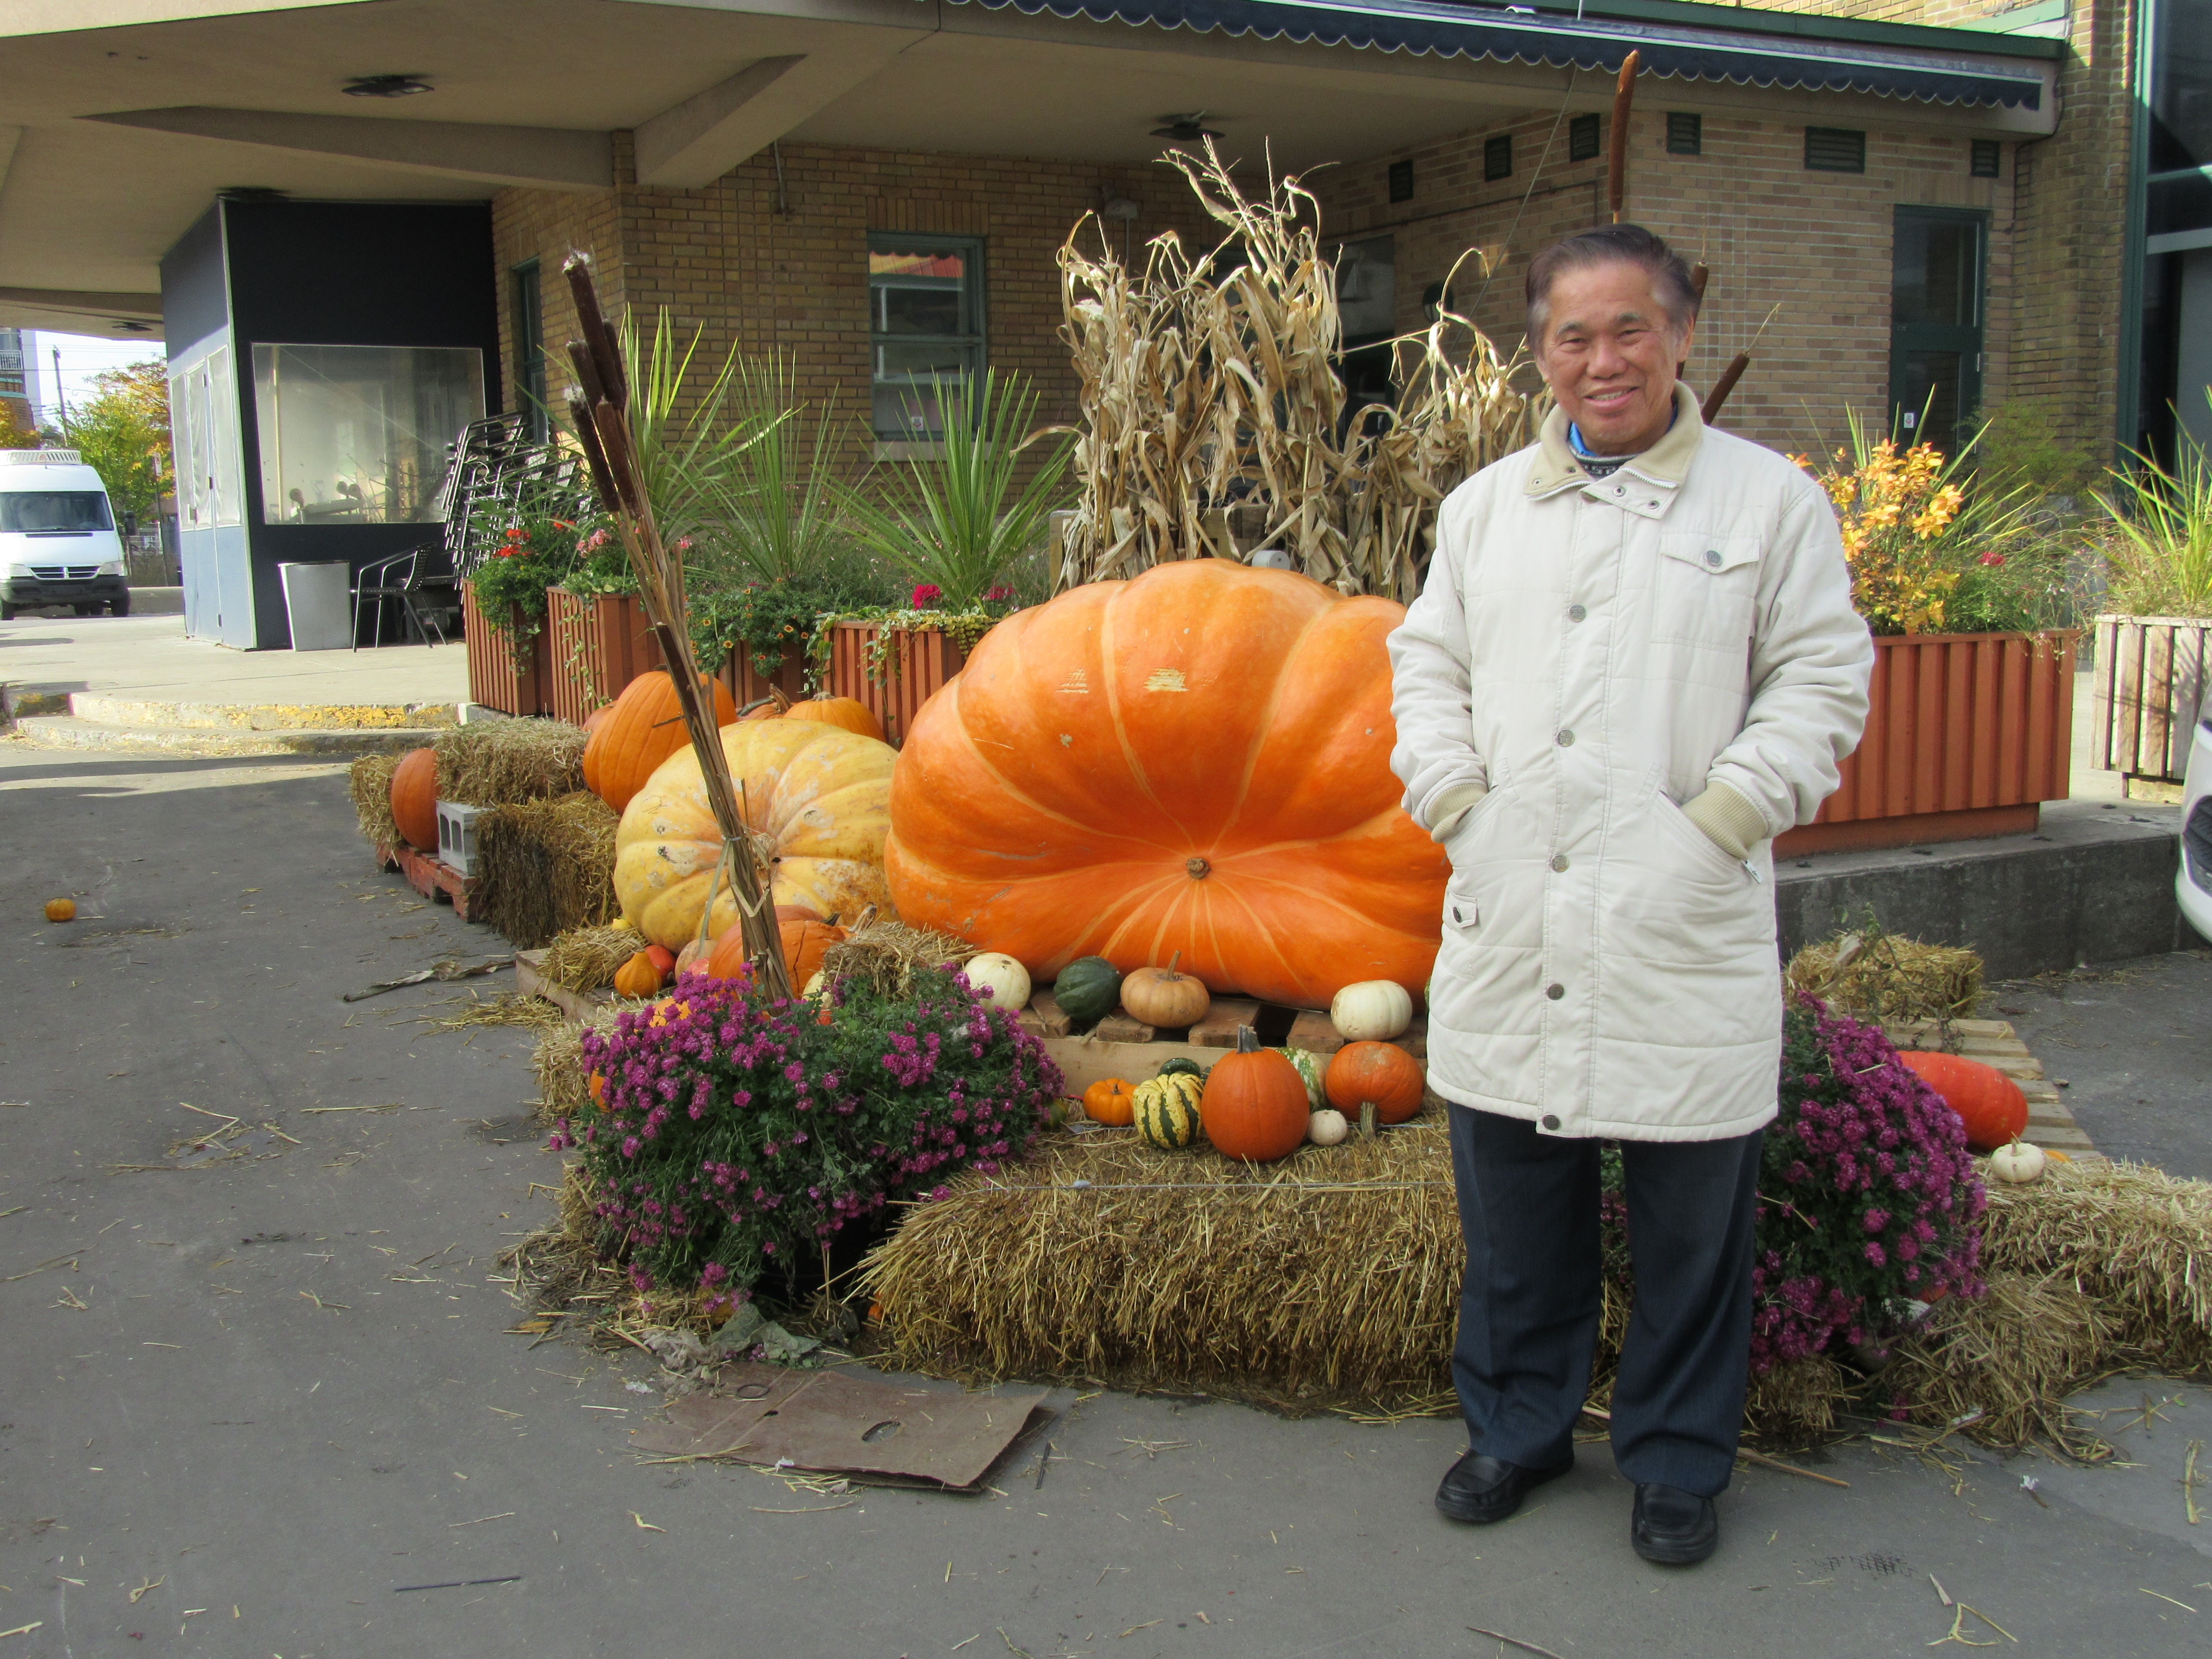 Gigantic pumpkins